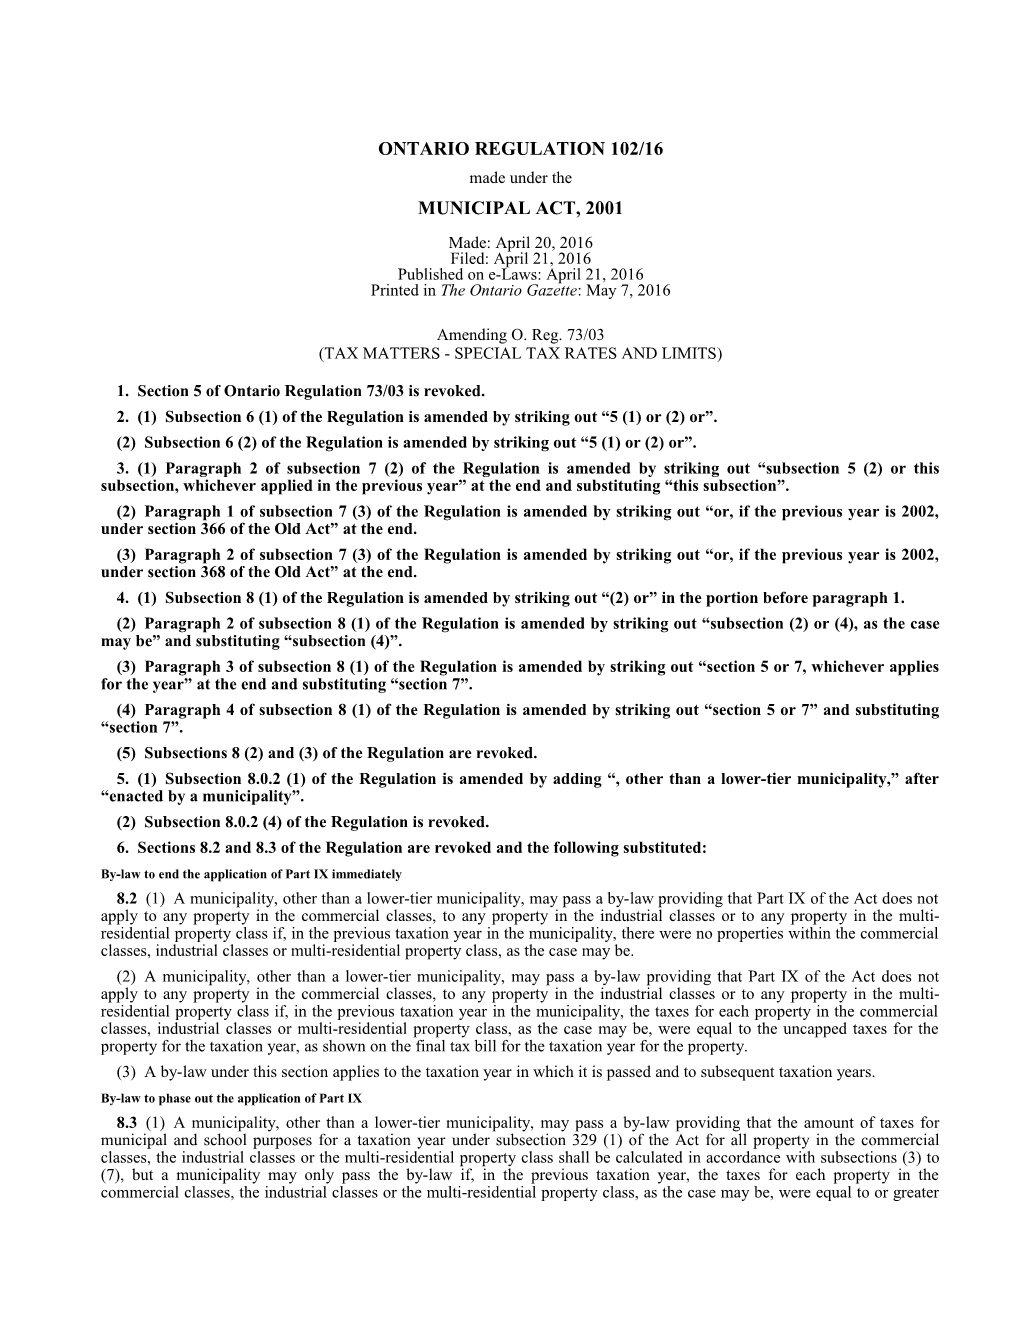 MUNICIPAL ACT, 2001 - O. Reg. 102/16